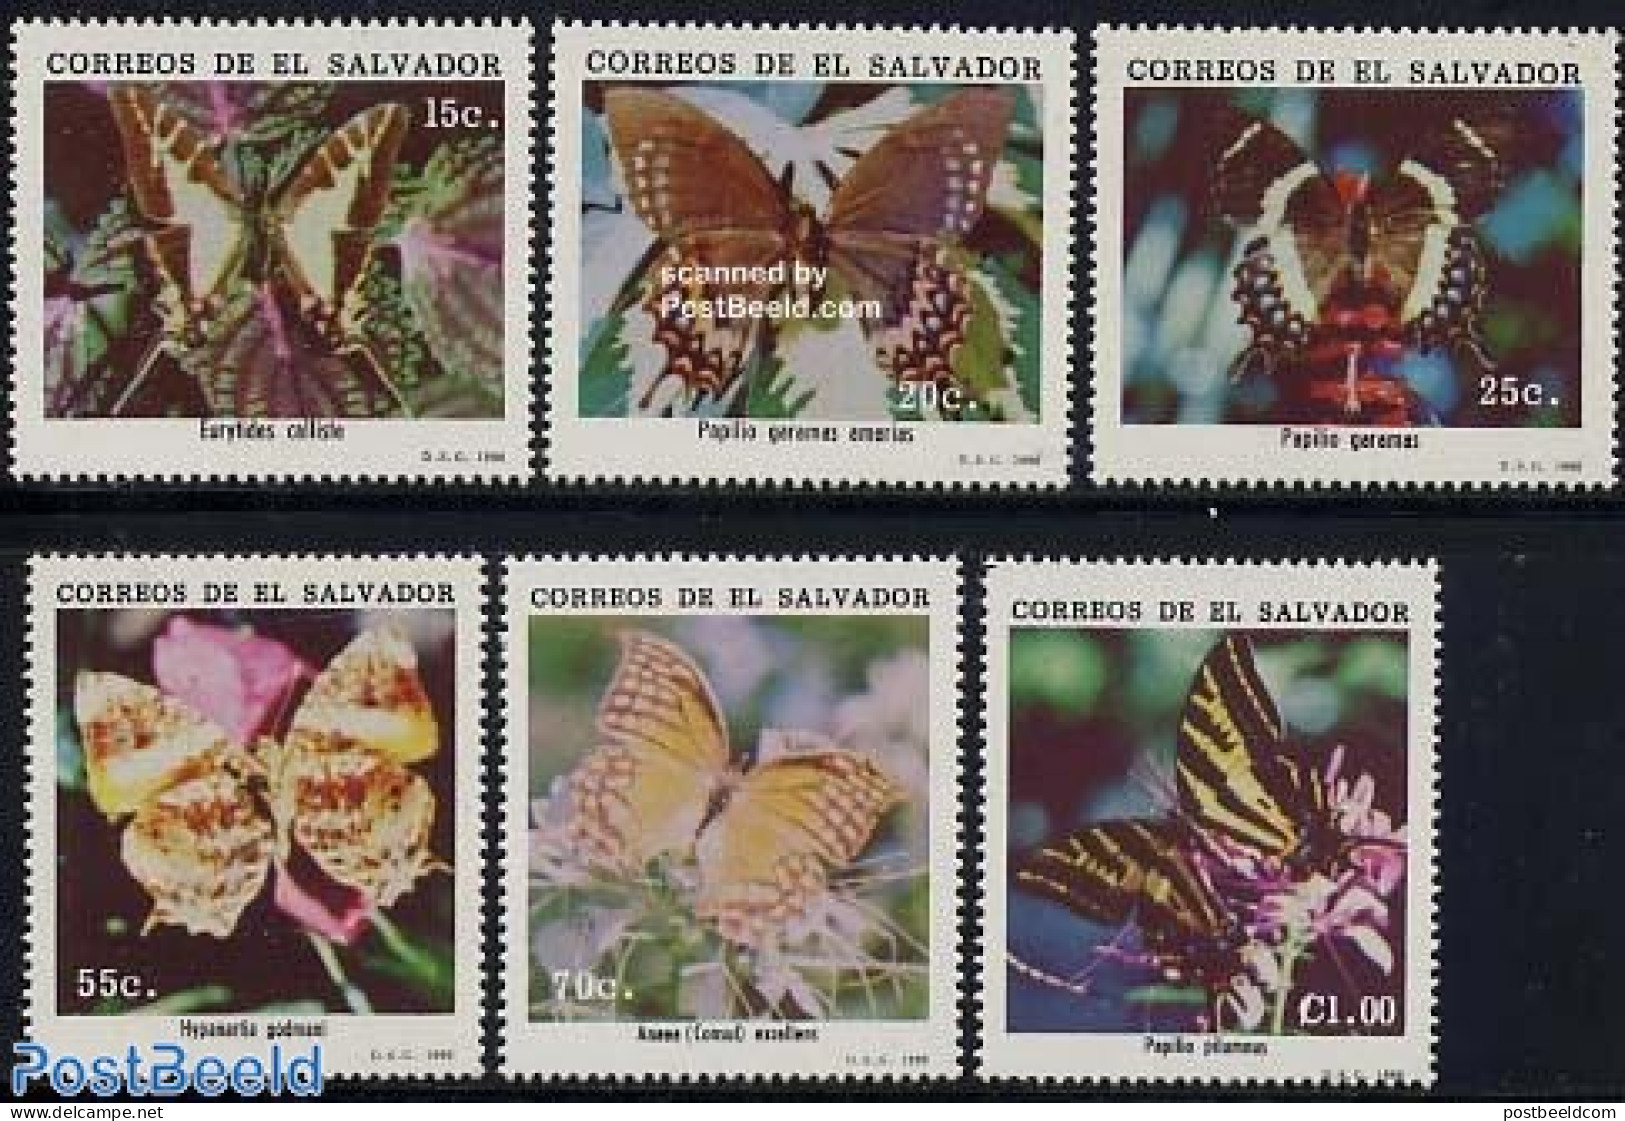 El Salvador 1990 Butterflies 6v, Mint NH, Nature - Butterflies - El Salvador